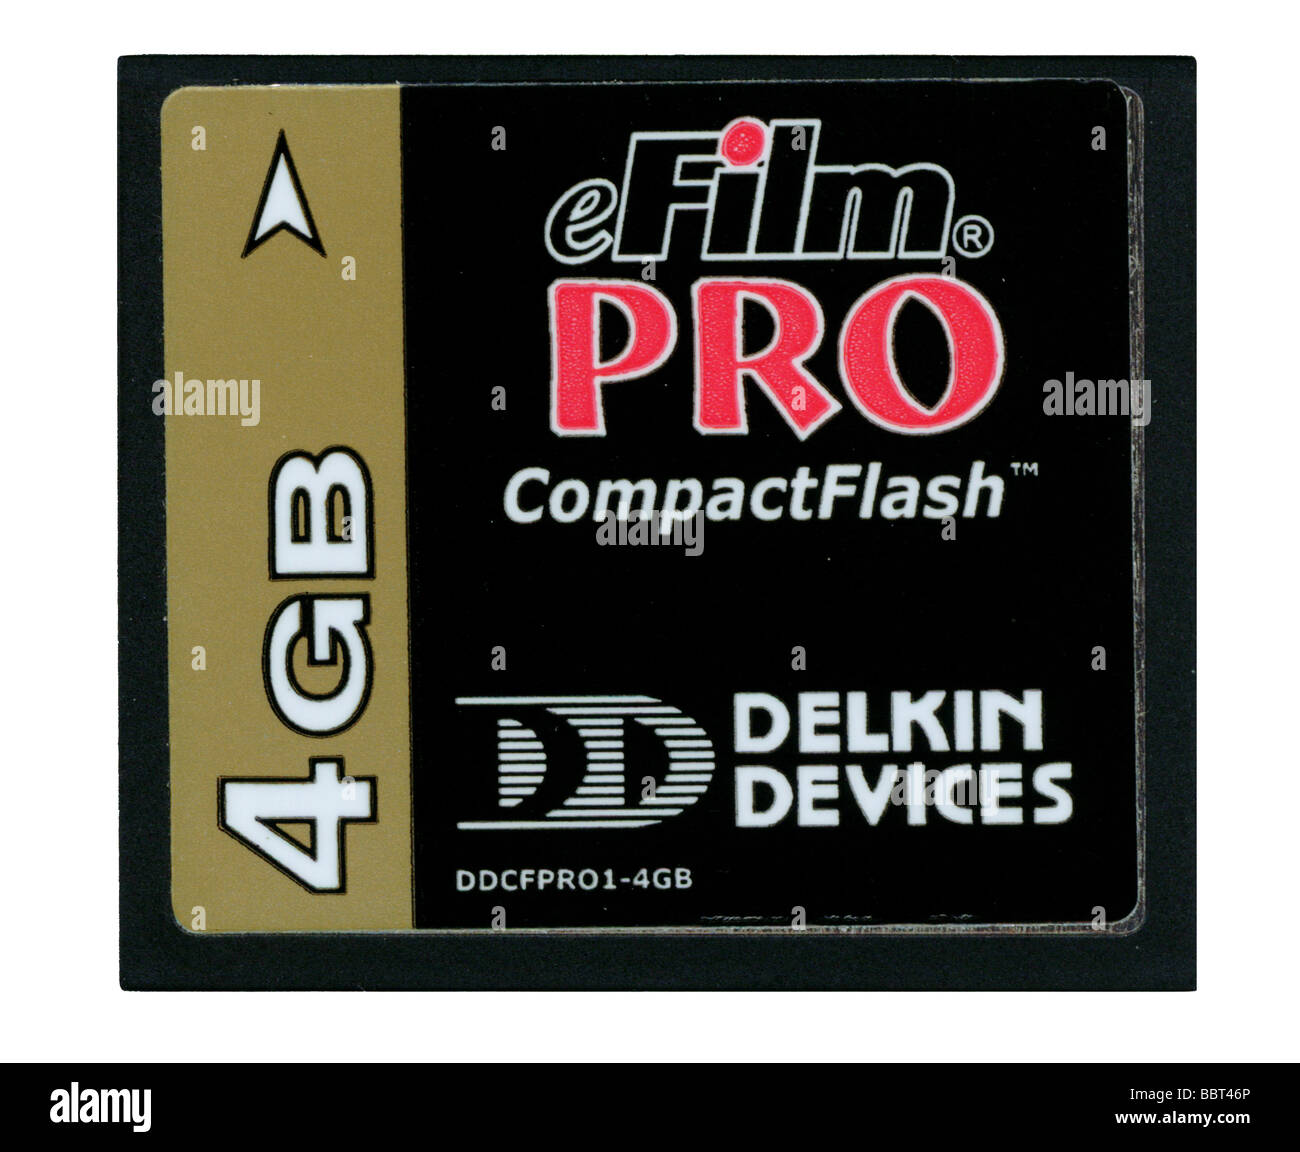 Efilm pro carte mémoire compact flash 4 Go périphériques delkin par Banque D'Images